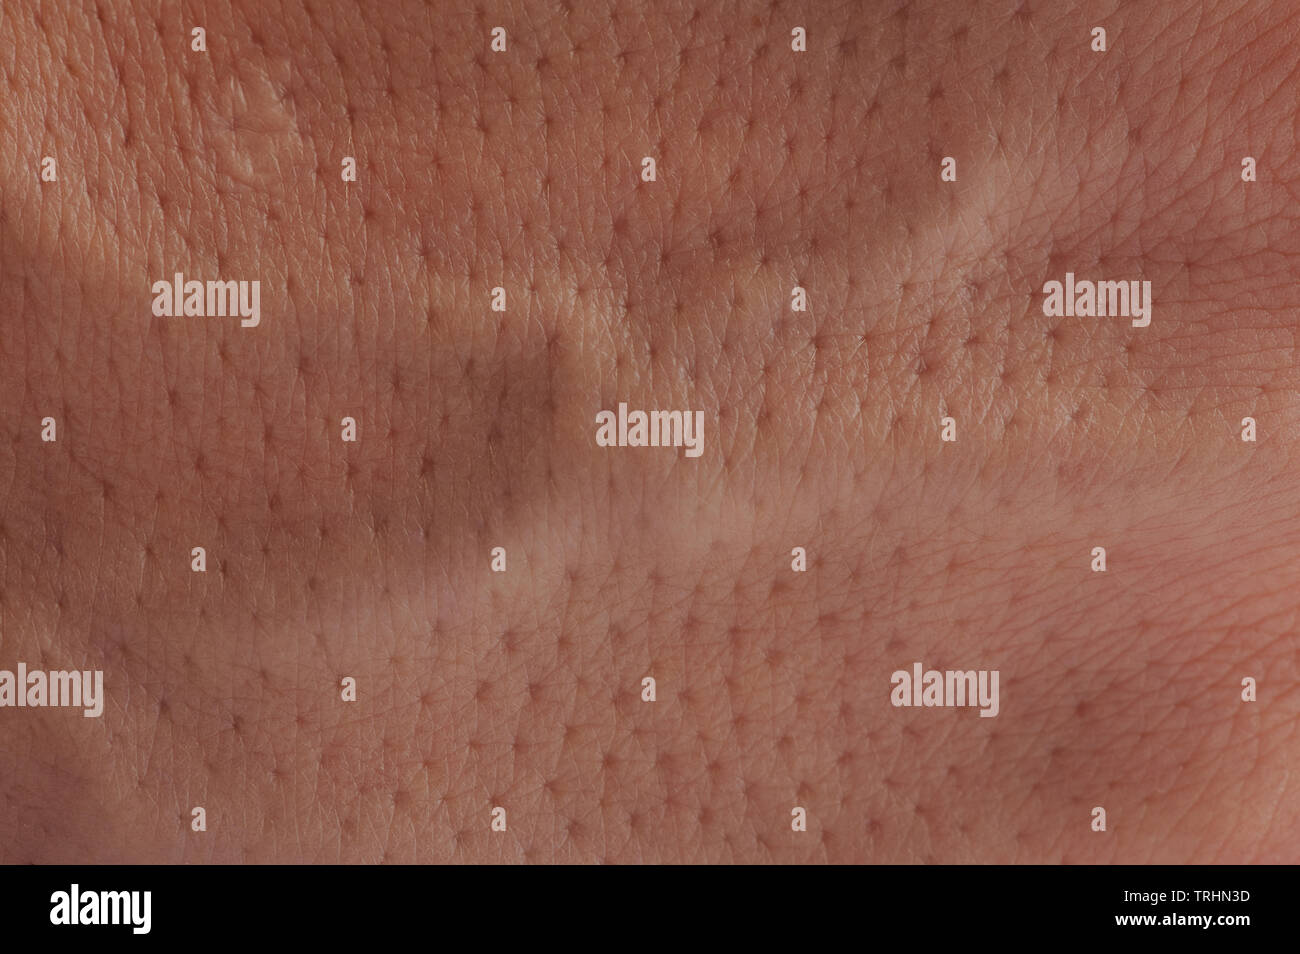 La surface de la peau rose avec des pores close up macro-vision Banque D'Images